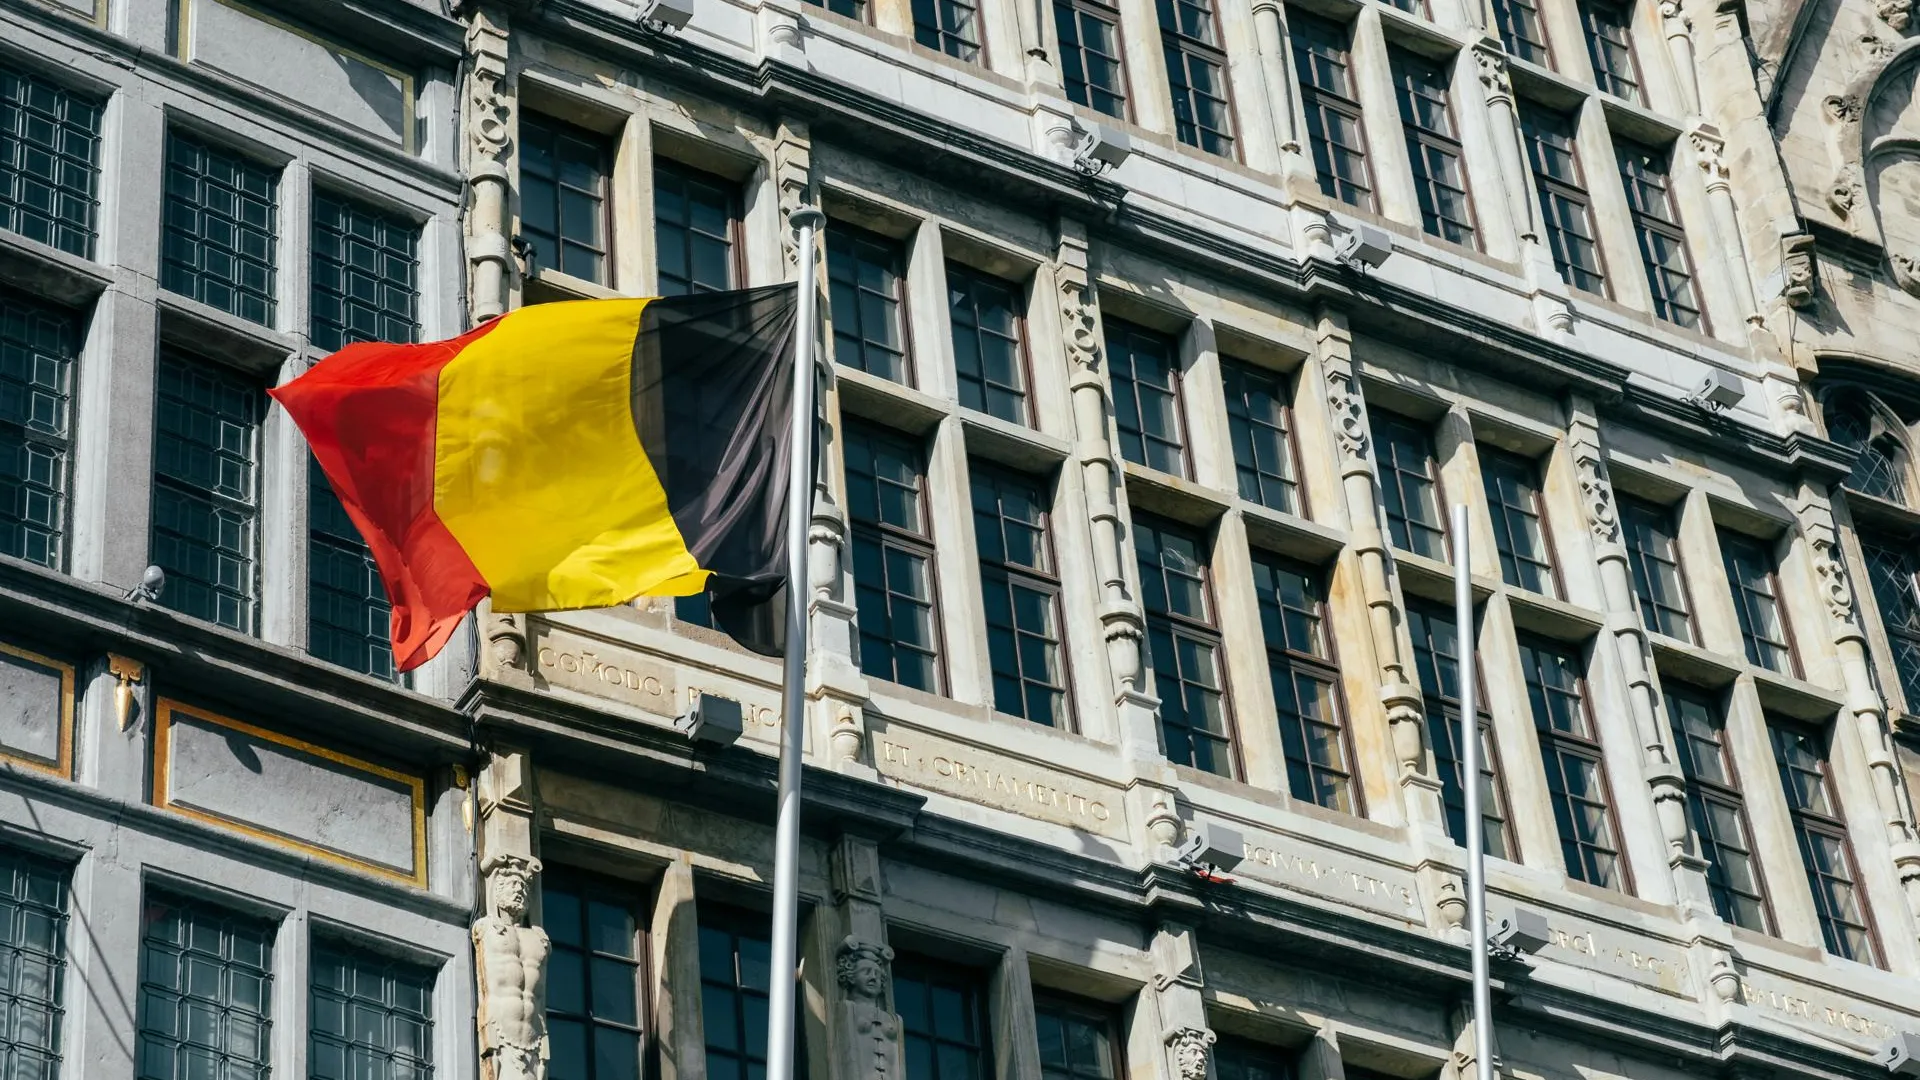 Бельгия отказалась признавать указ Путина об обмене активами